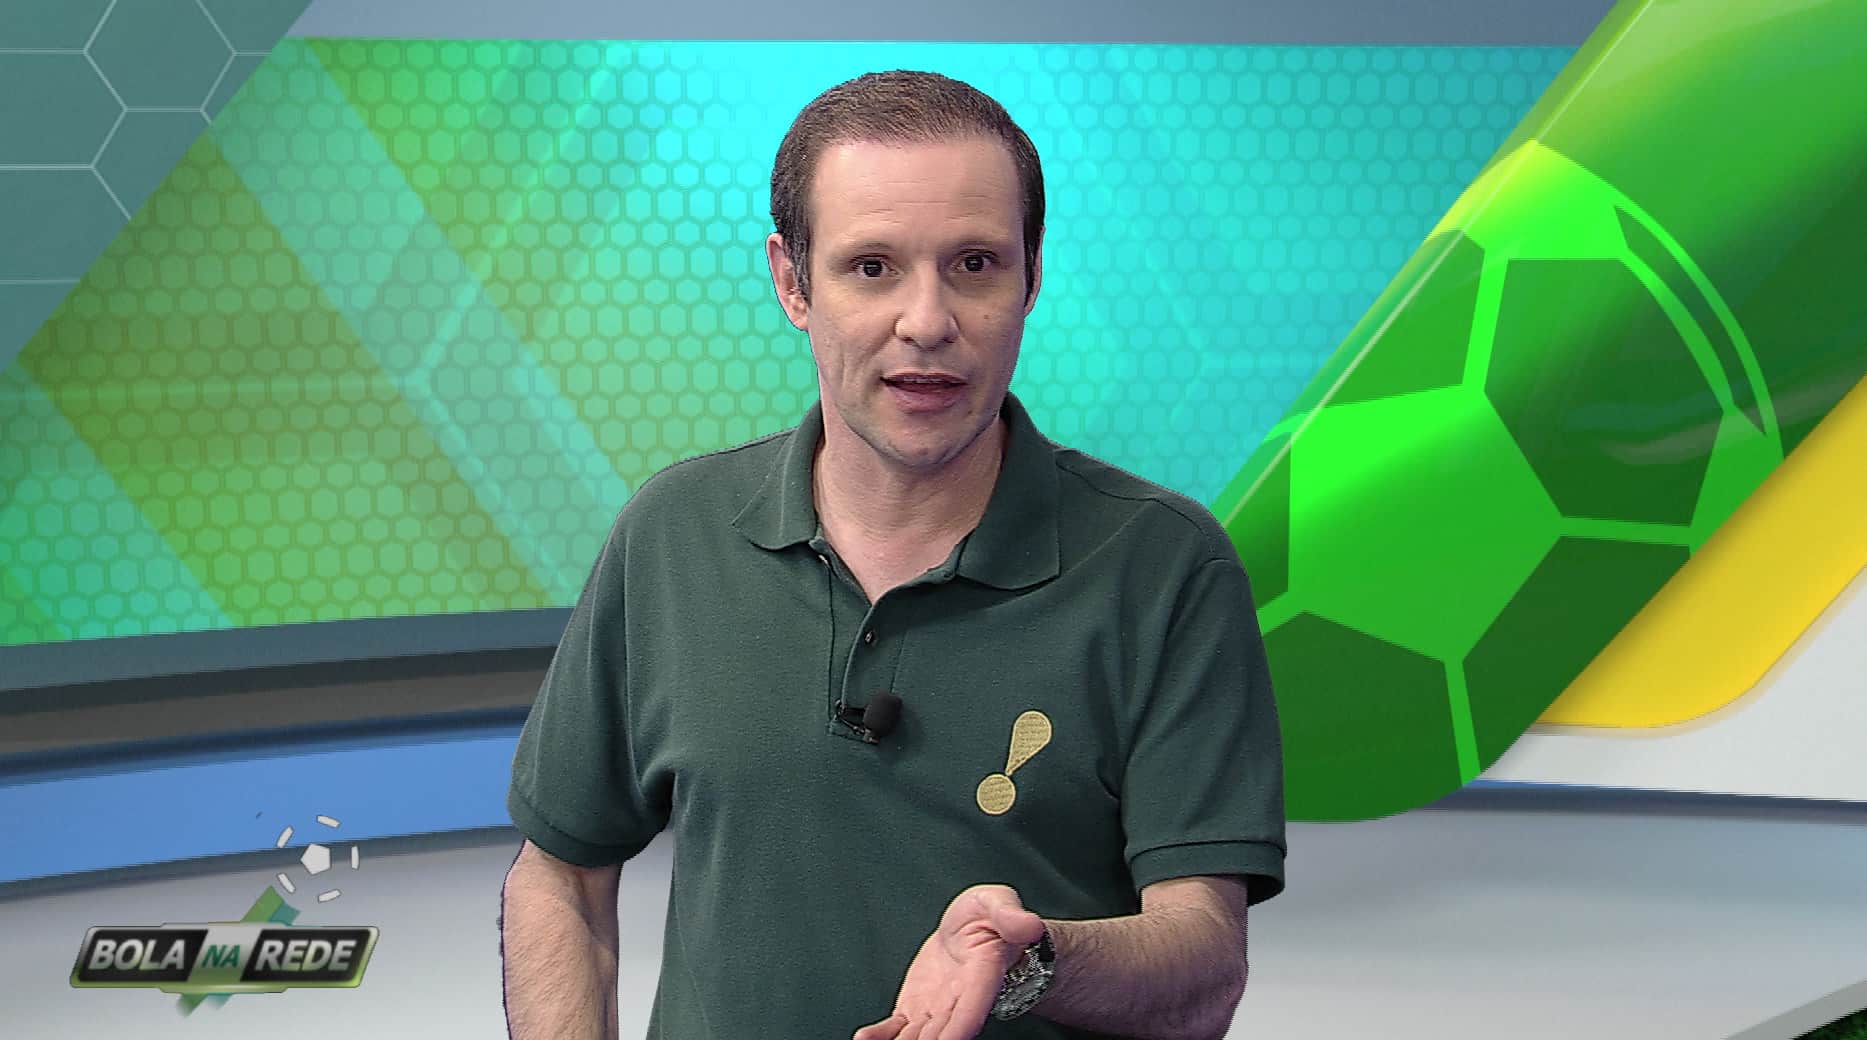 Audiência da TV: “Bola na Rede” consolida 3º lugar para a RedeTV! em agosto